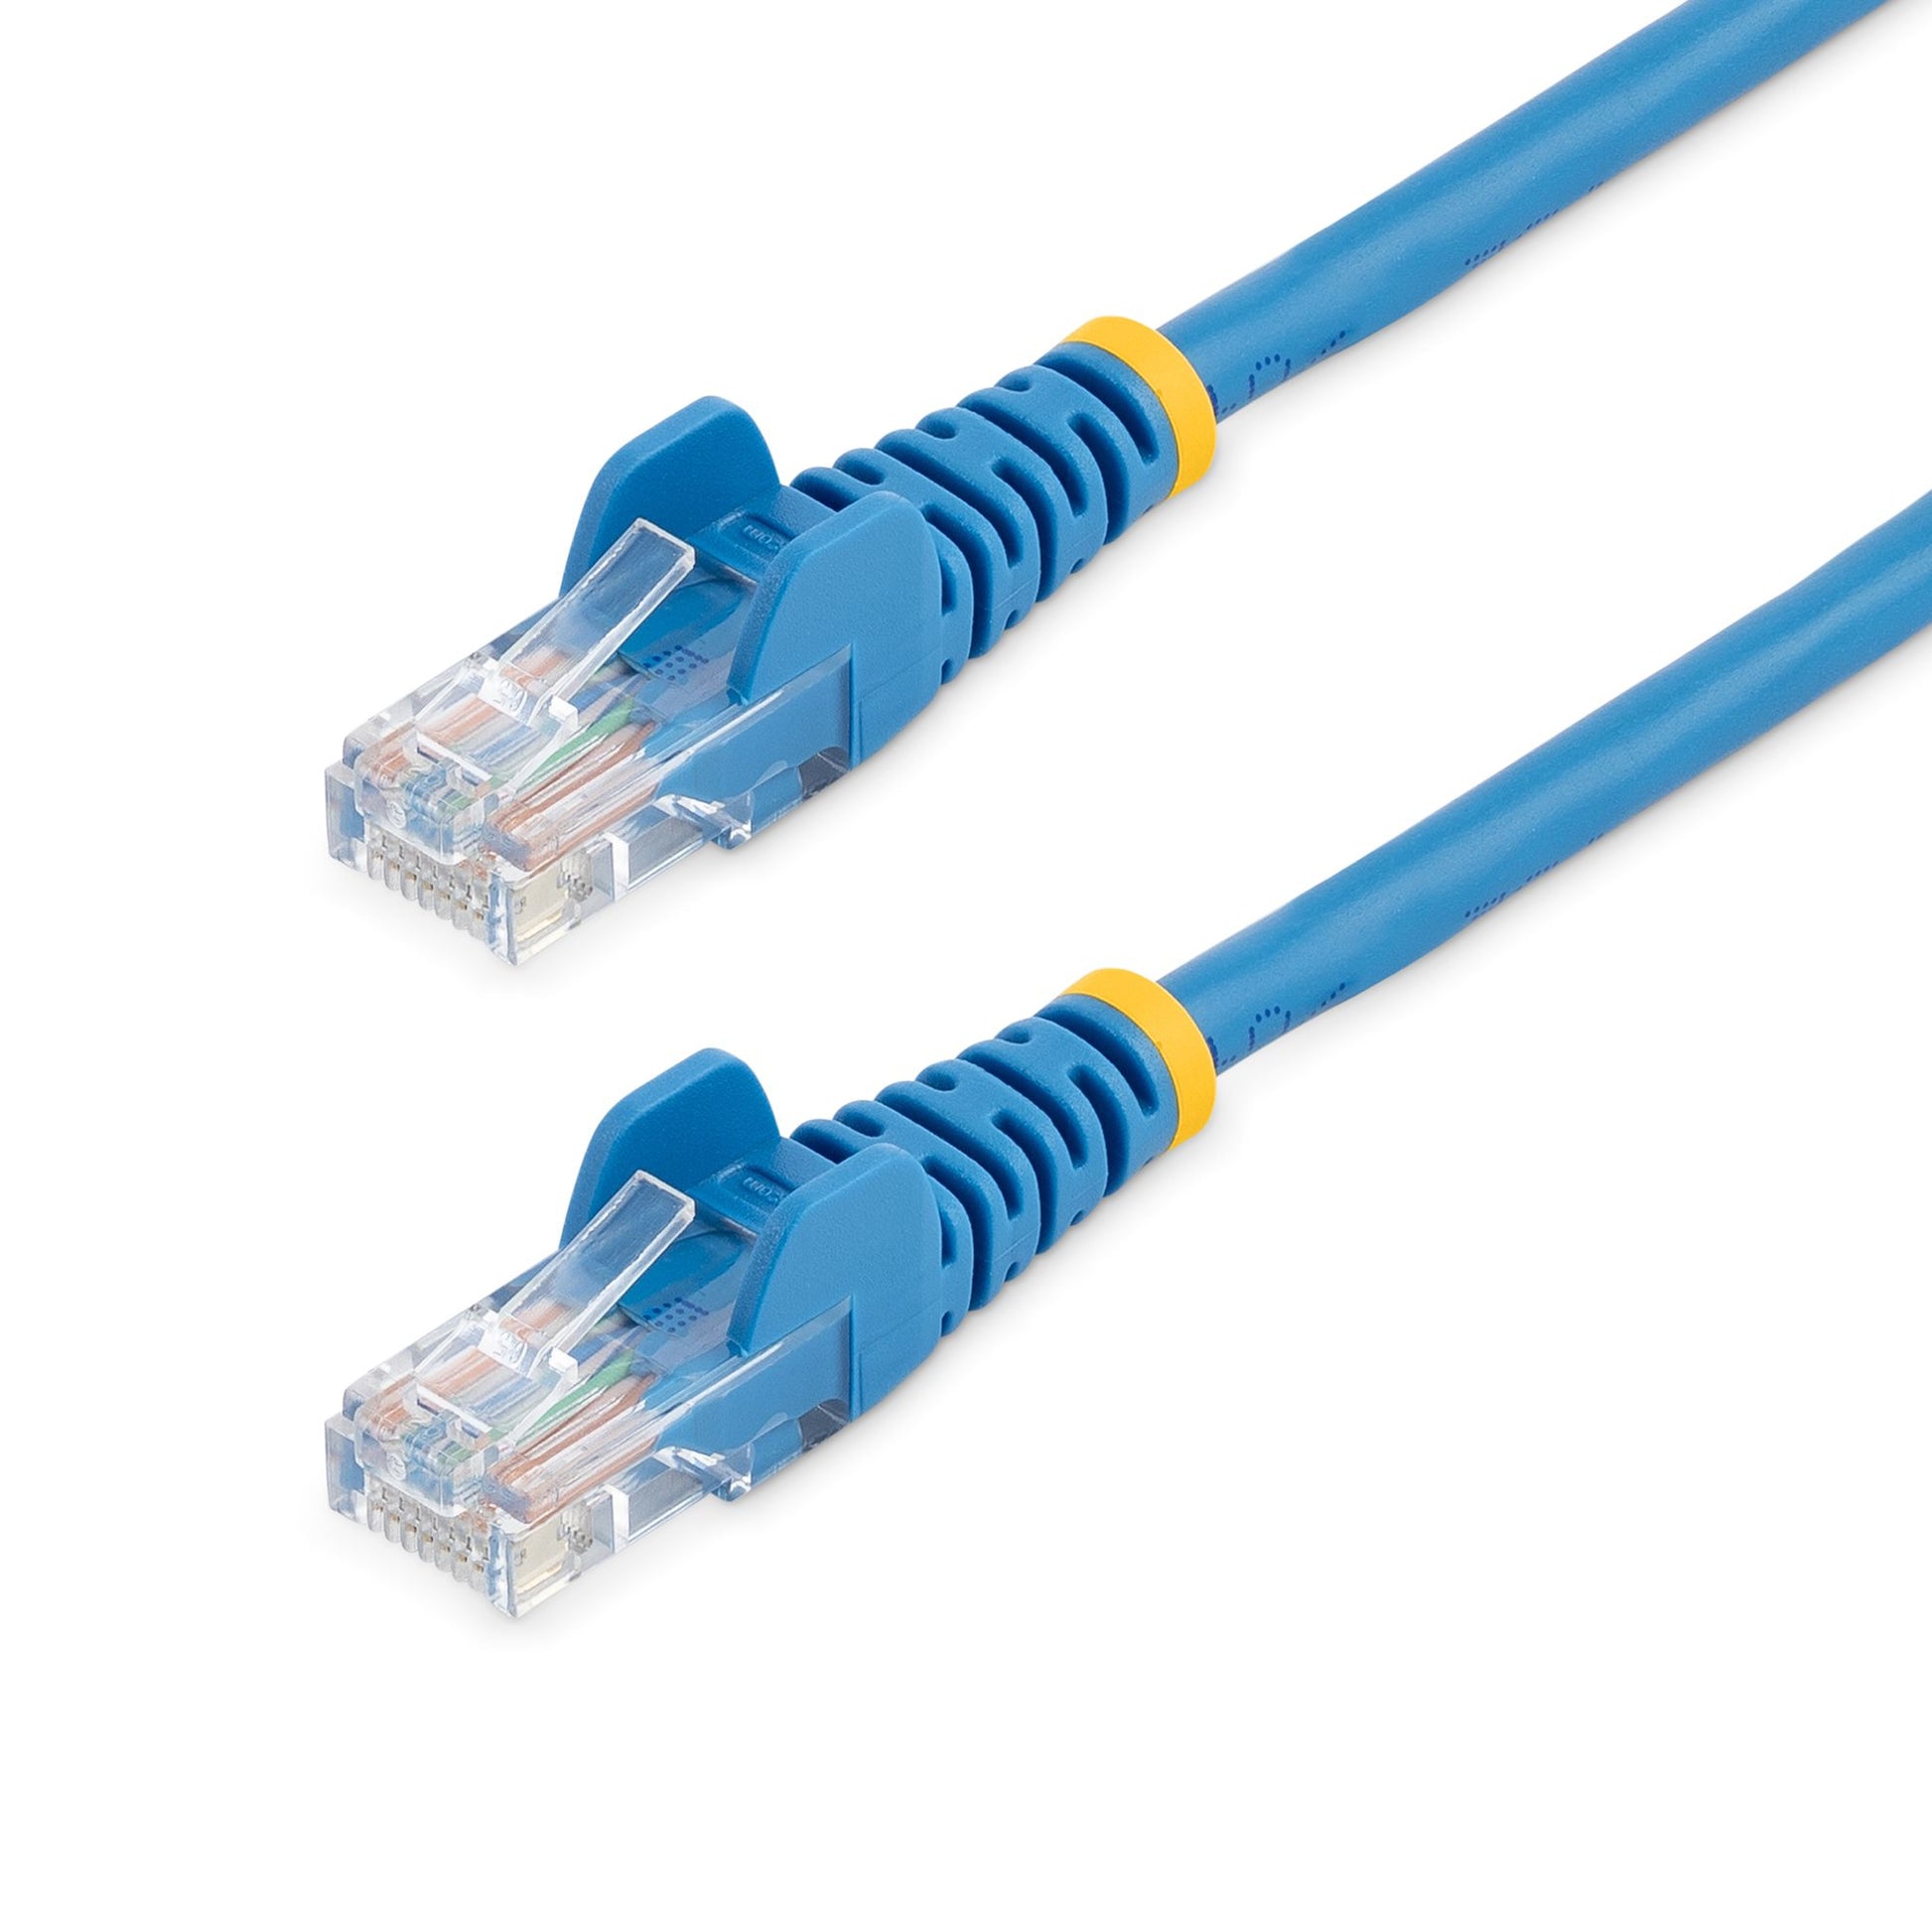 StarTech.com Cat5e Ethernet Patch Cable with Snagless RJ45 Connectors - 10 m, Blue-0